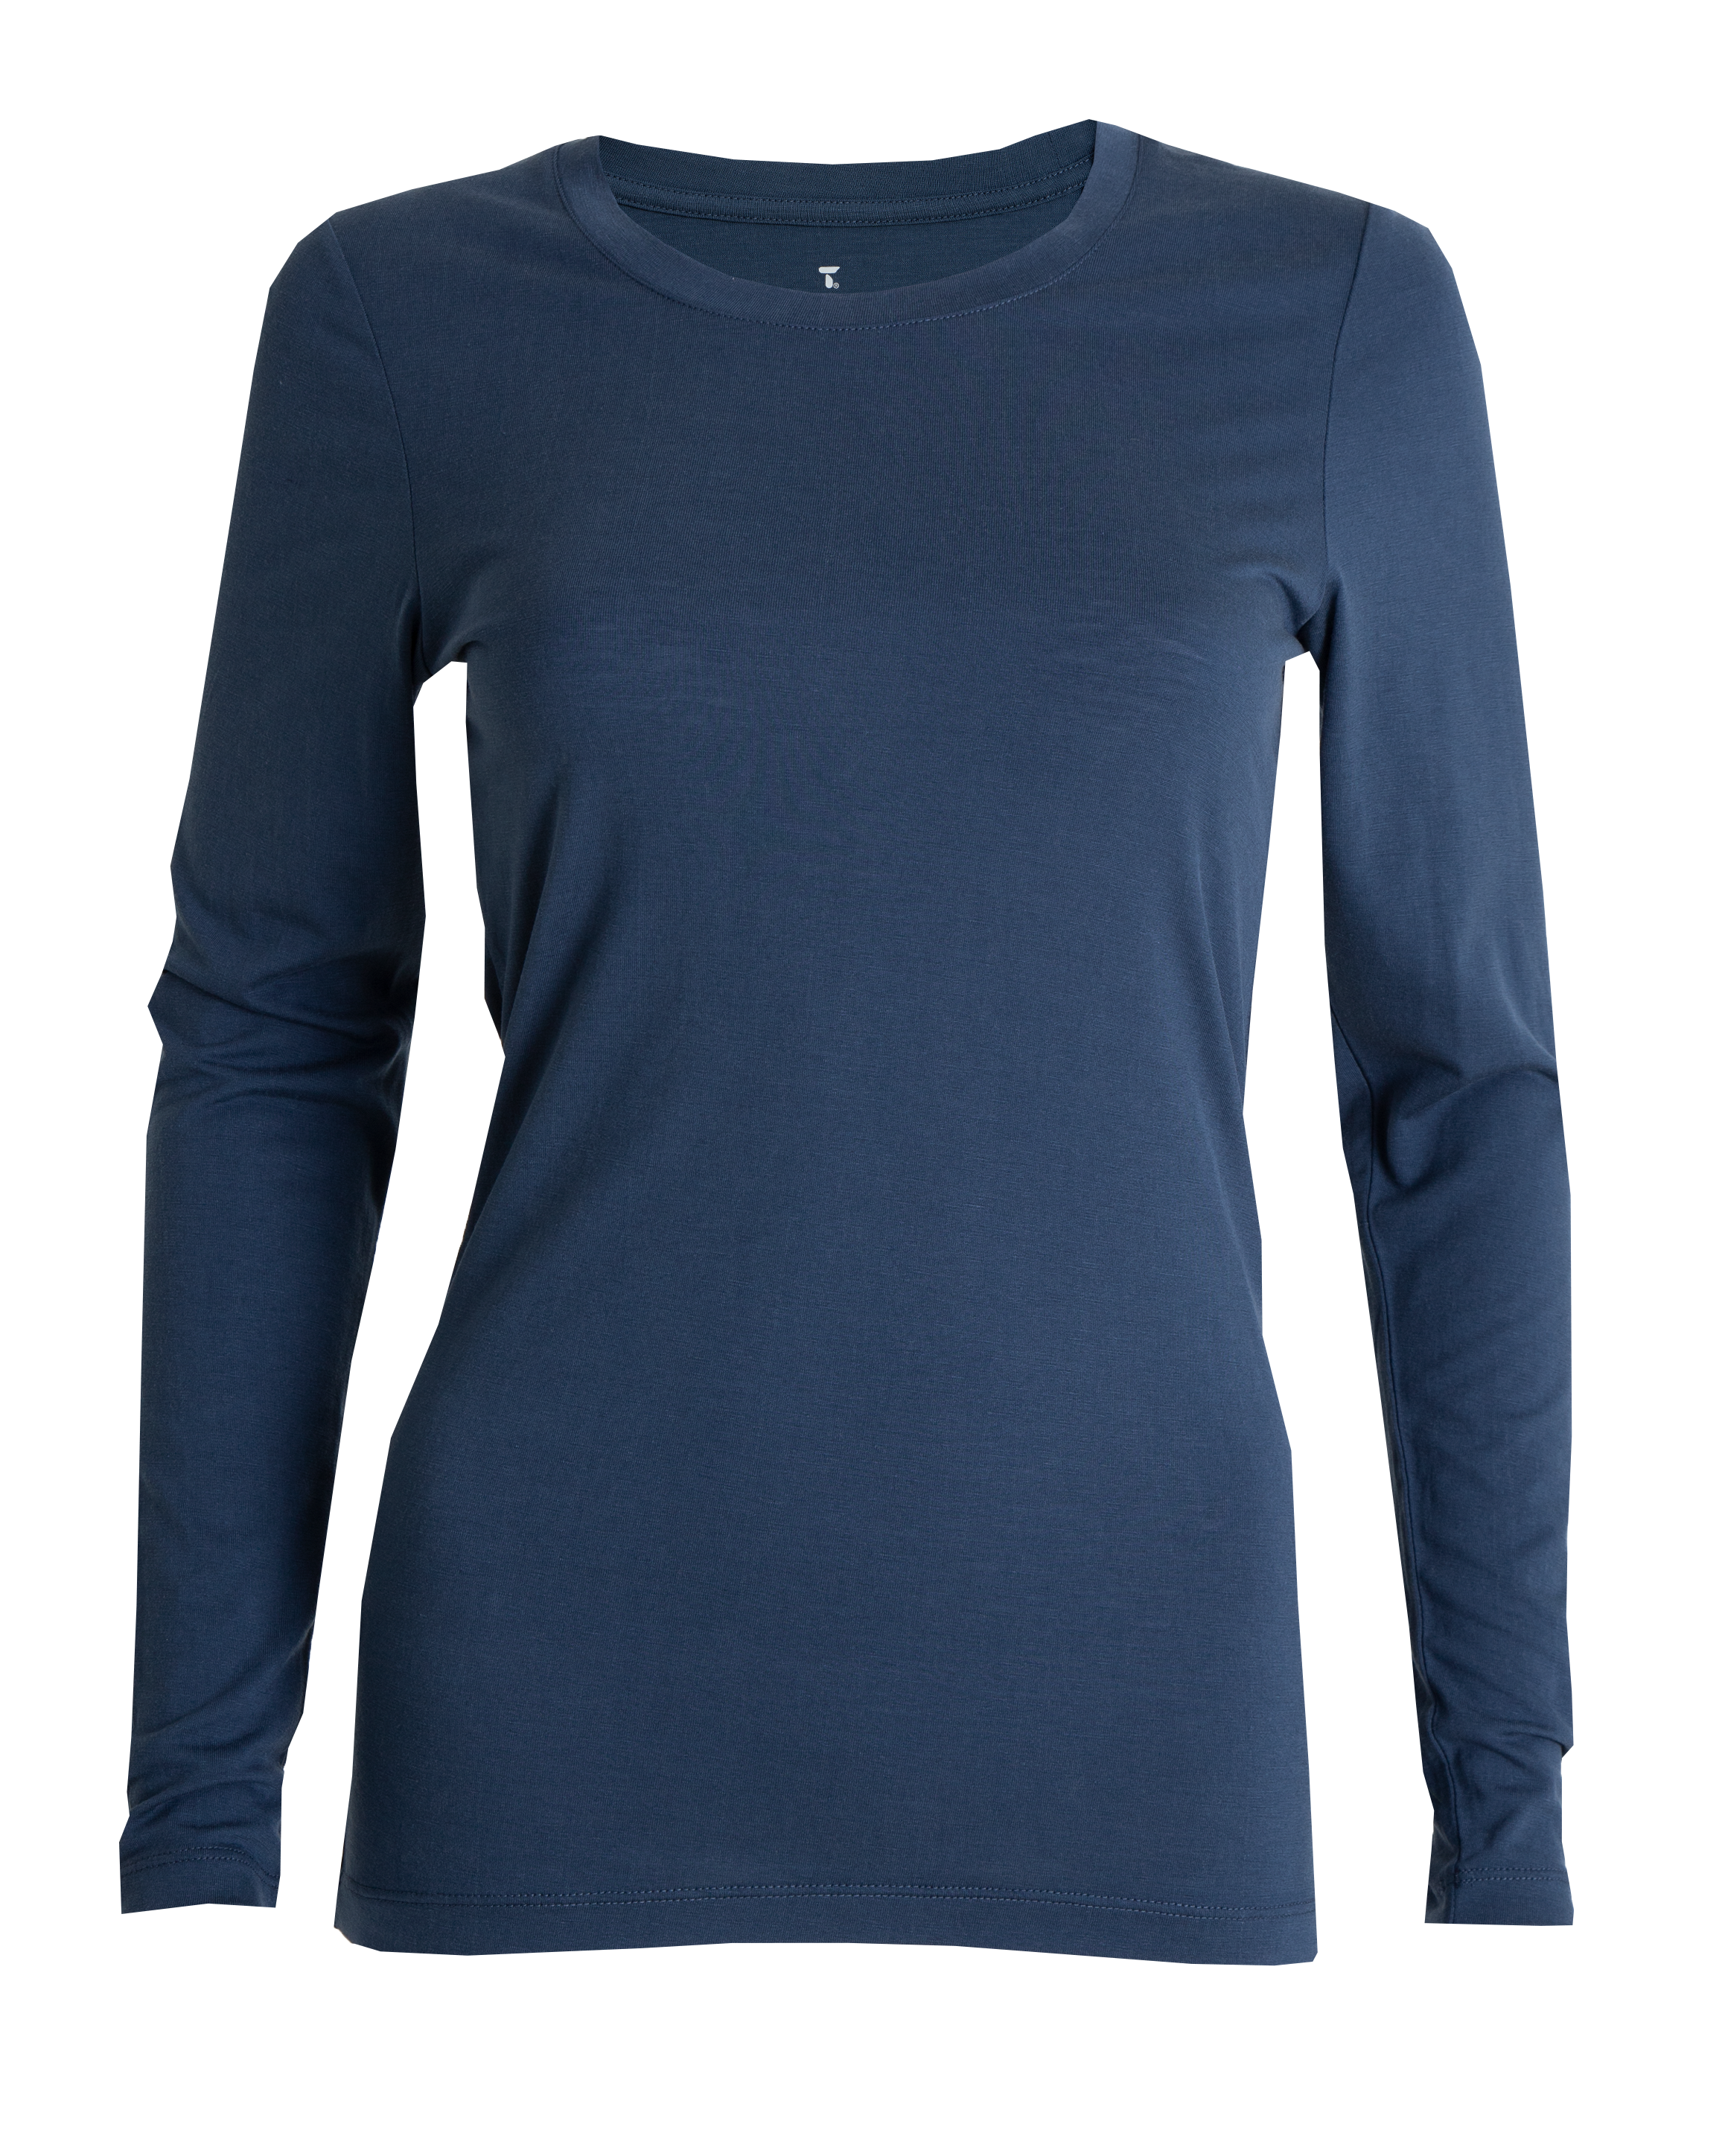 Tufte Woman Light Wool Long Sleeve Blue, 1 stk.